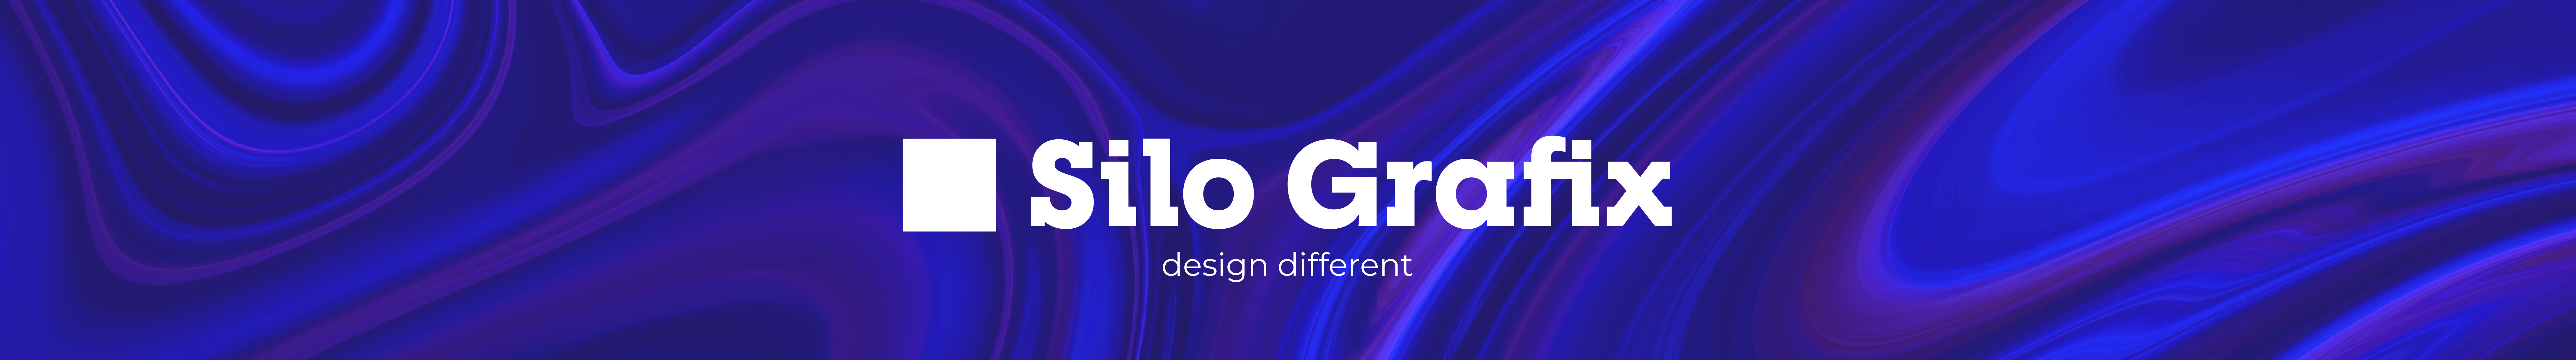 Silo Grafix's profile banner